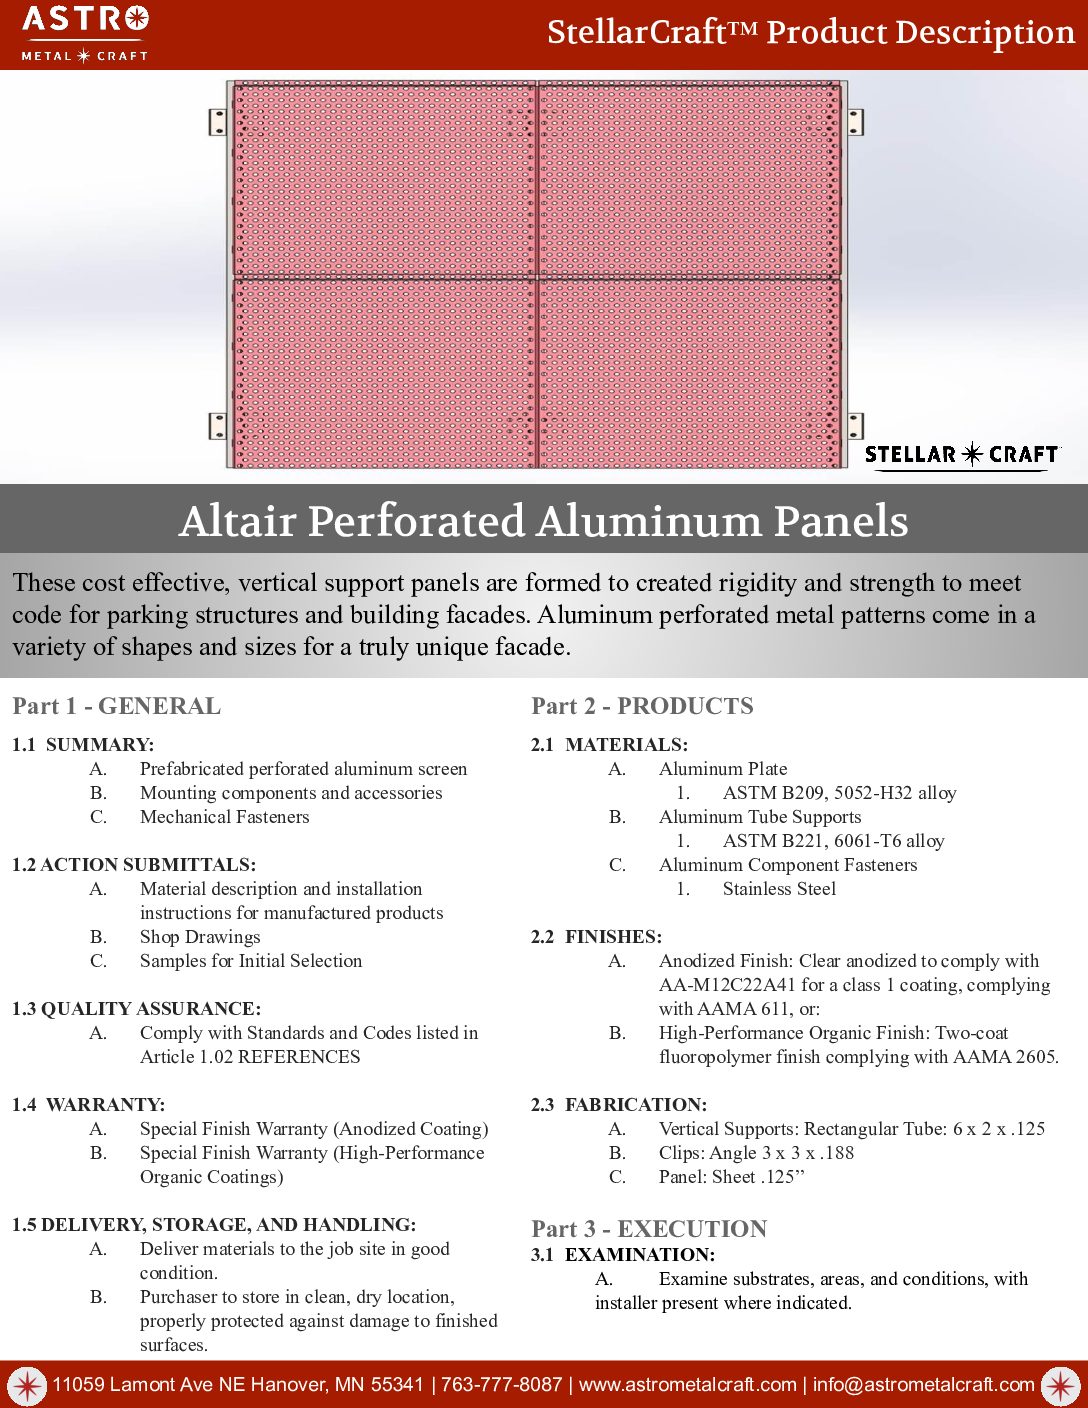 Astro Metal Craft – Stellar Craft Altair Perforated Aluminum Panels Line Card